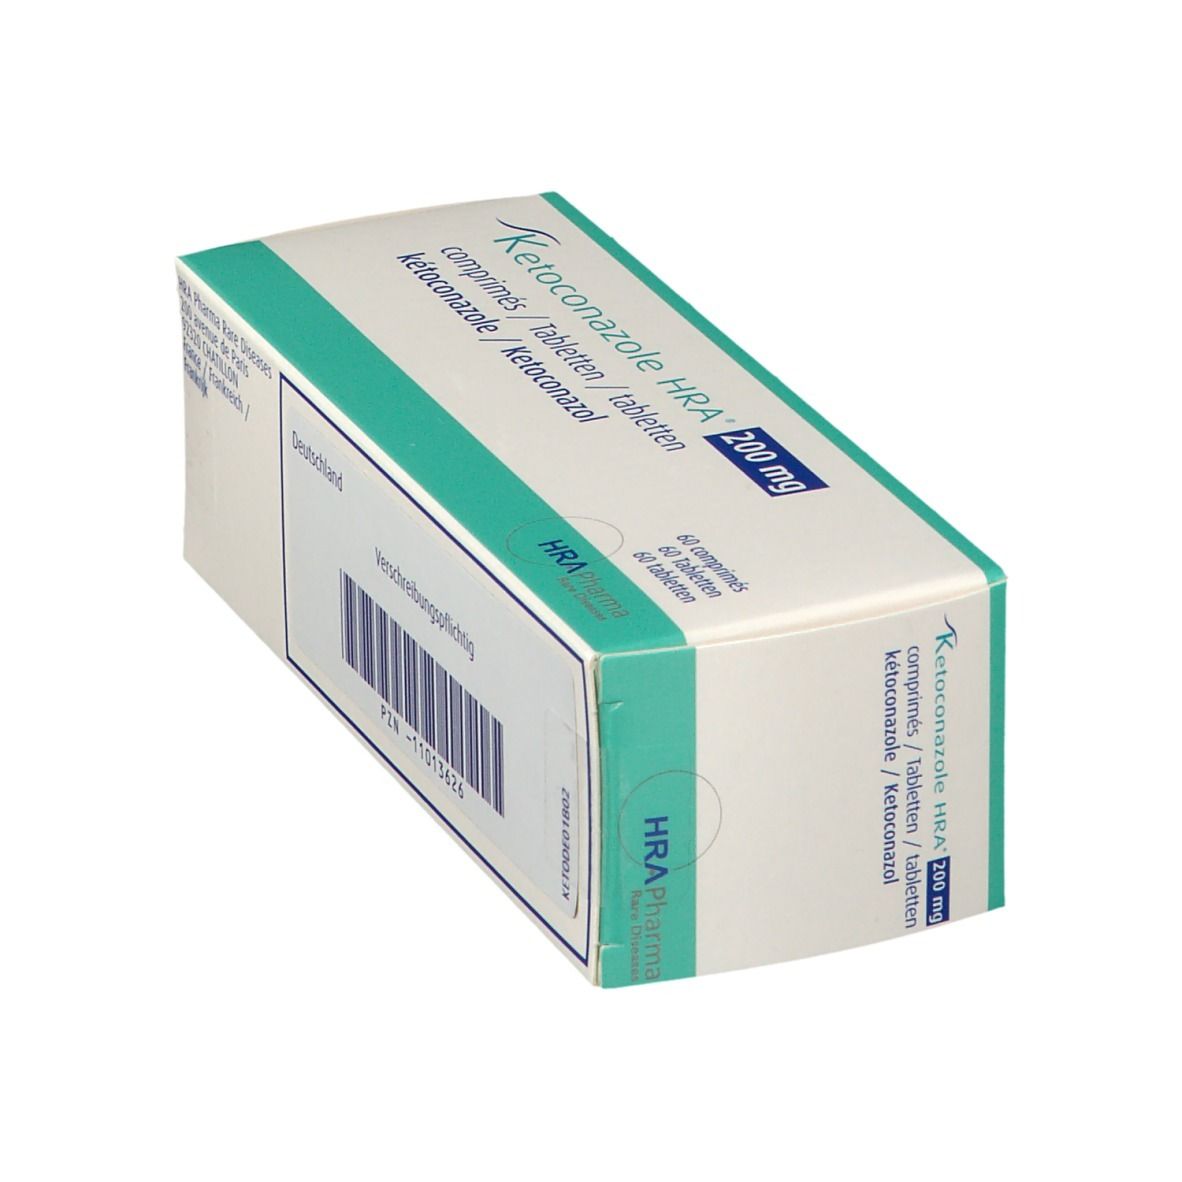 Ketoconazole HRA 200 mg